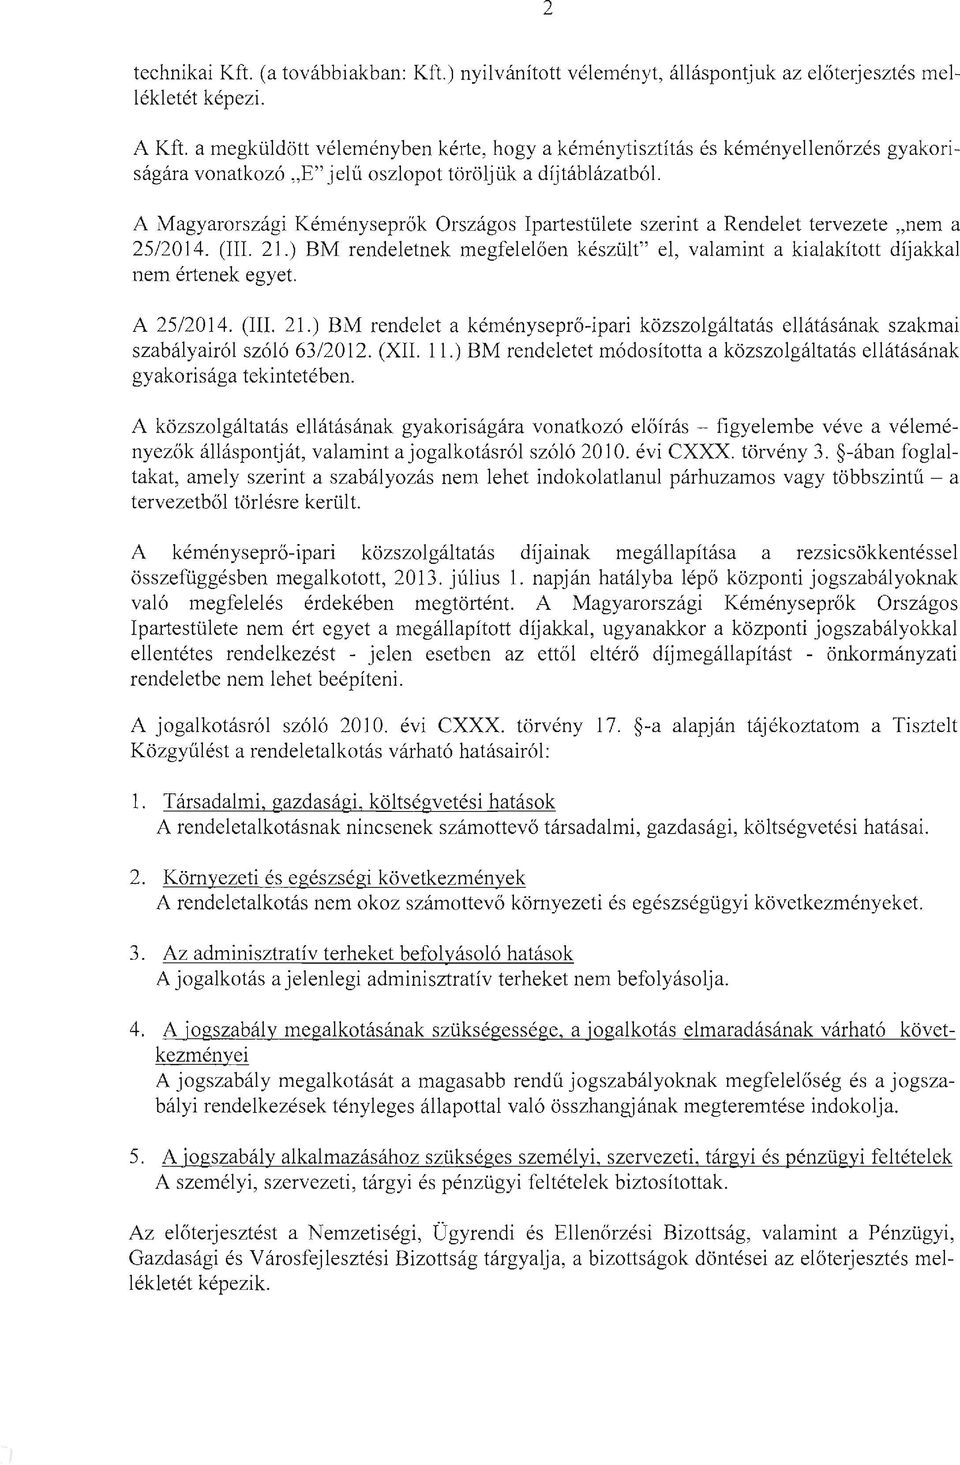 A Magyarországi Kéményseprők Országos Ipartestülete szerint a Rendelet tervezete "nem a 25/2014. (III. 21.) BM rendeletnek megfelelően készült" el, valamint a kialakított díjakkal nem értenek egyet.